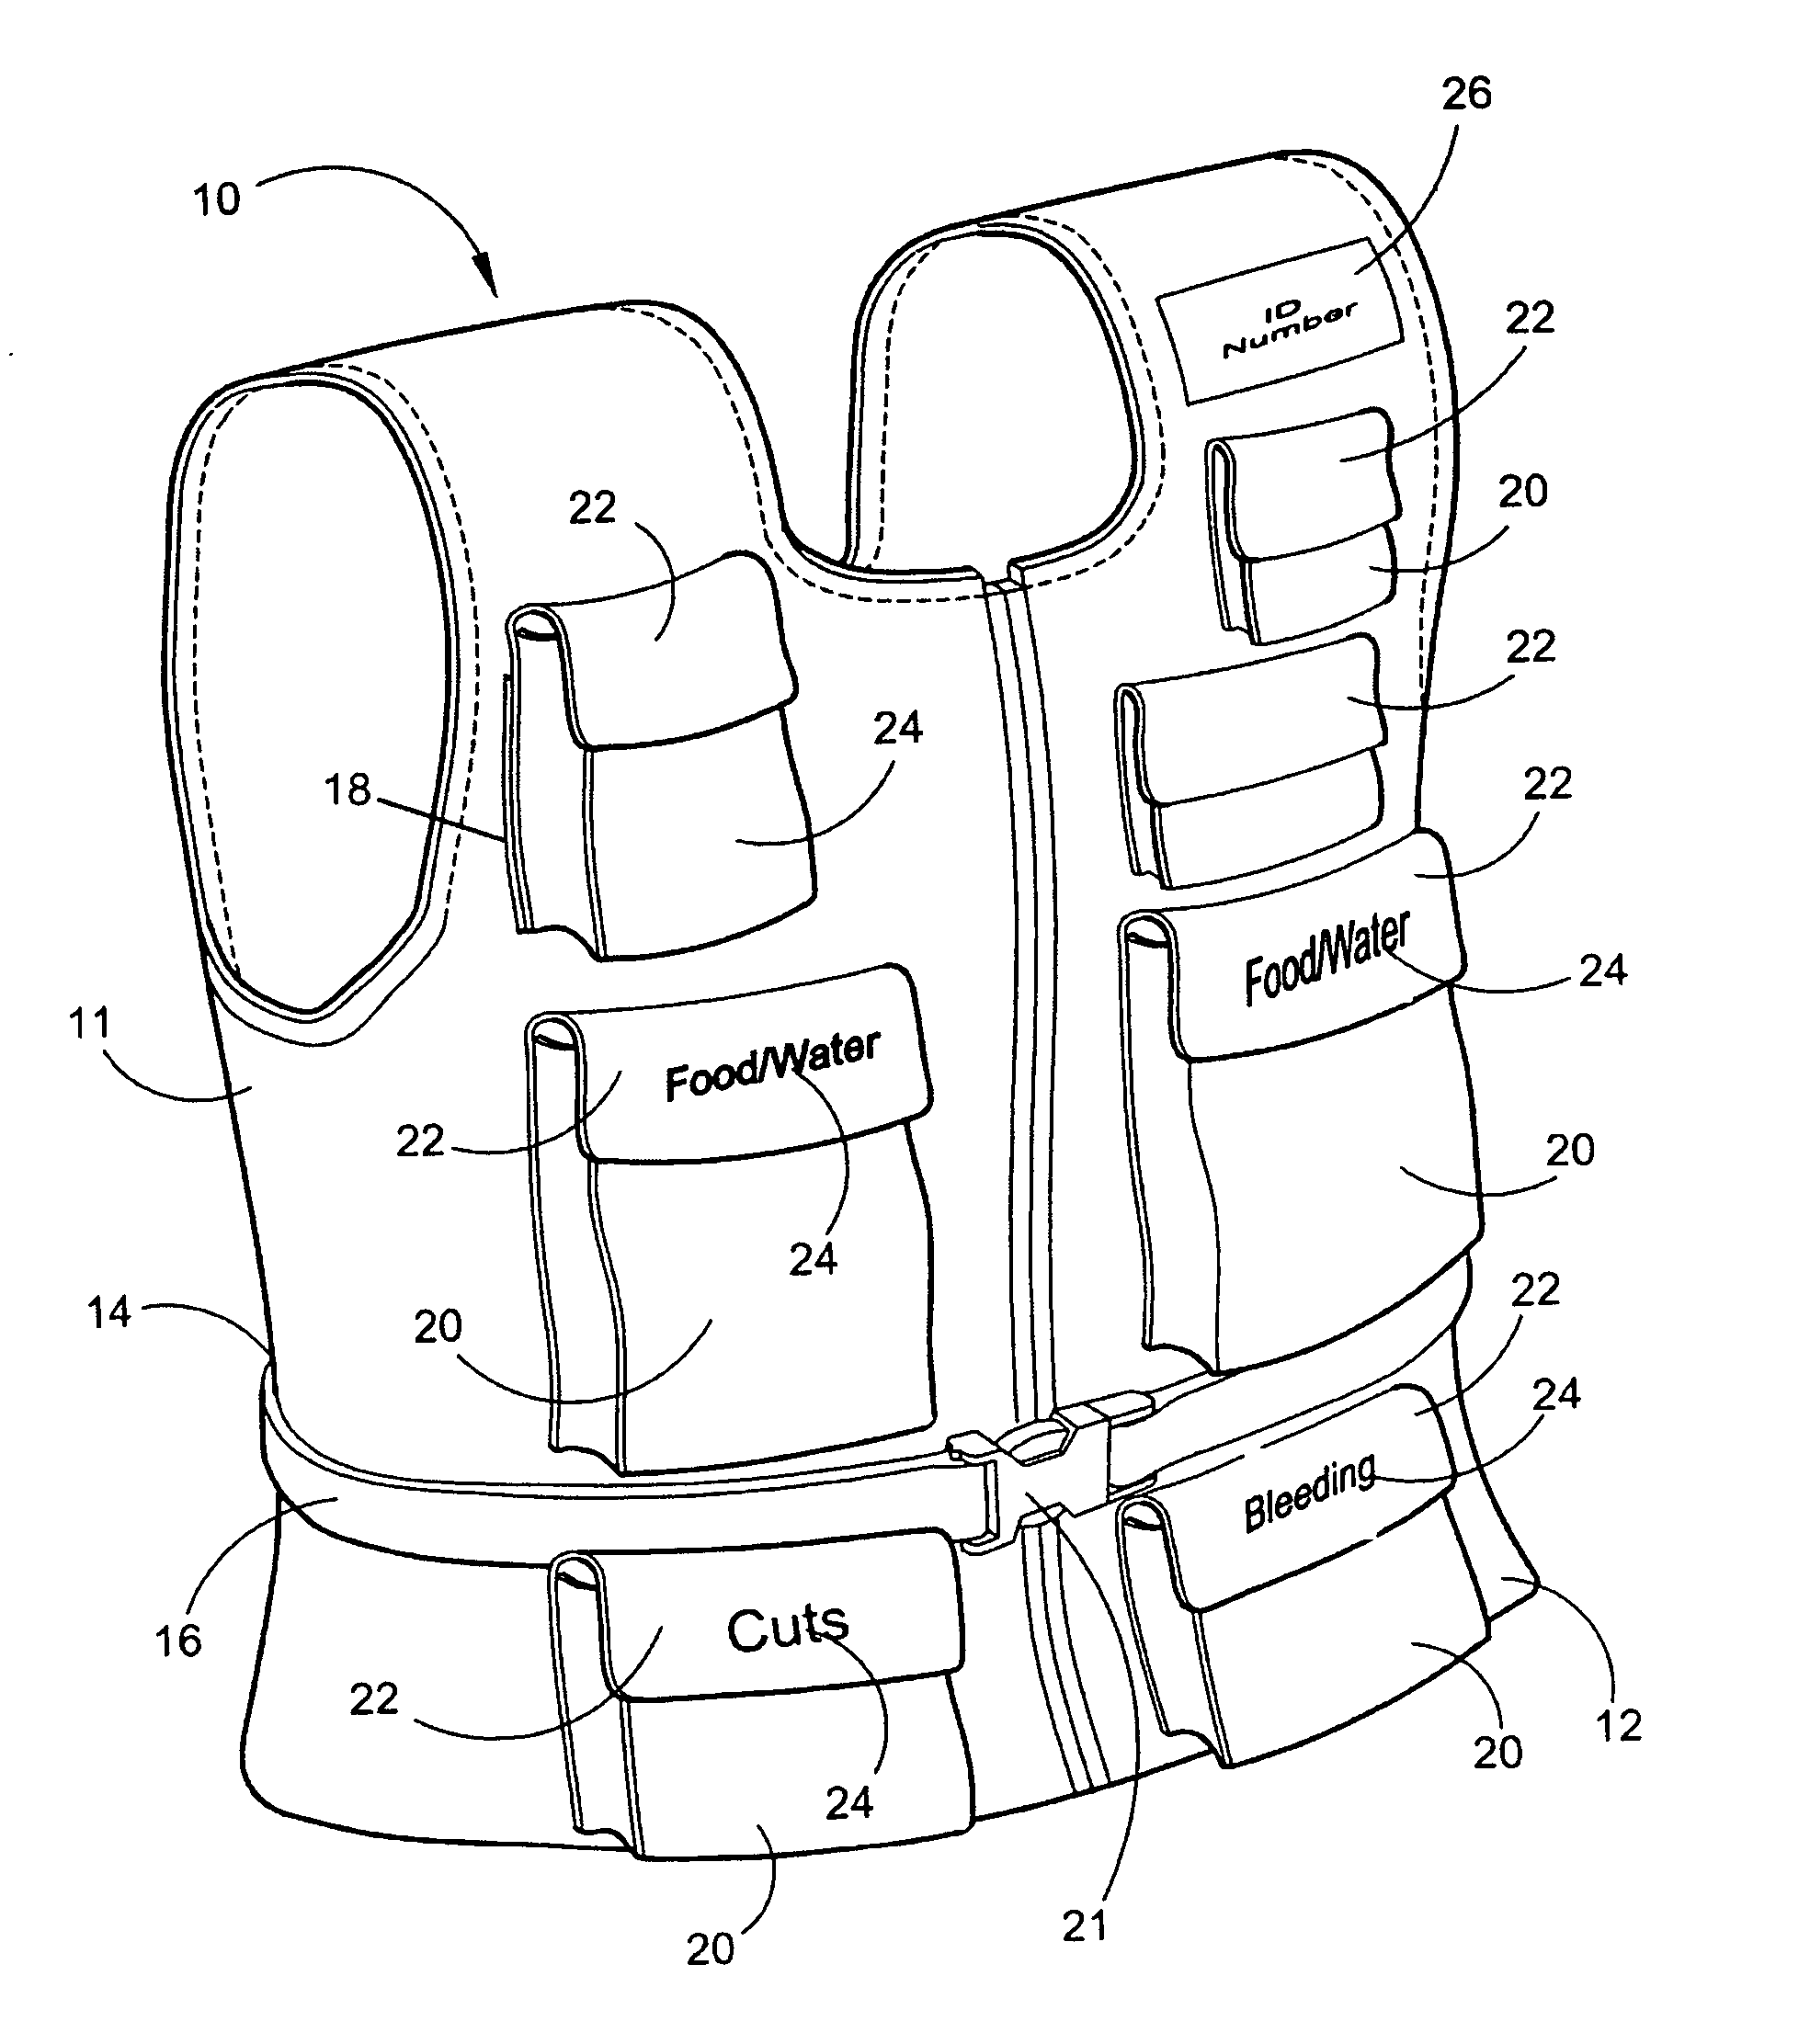 Emergency preparedness vest